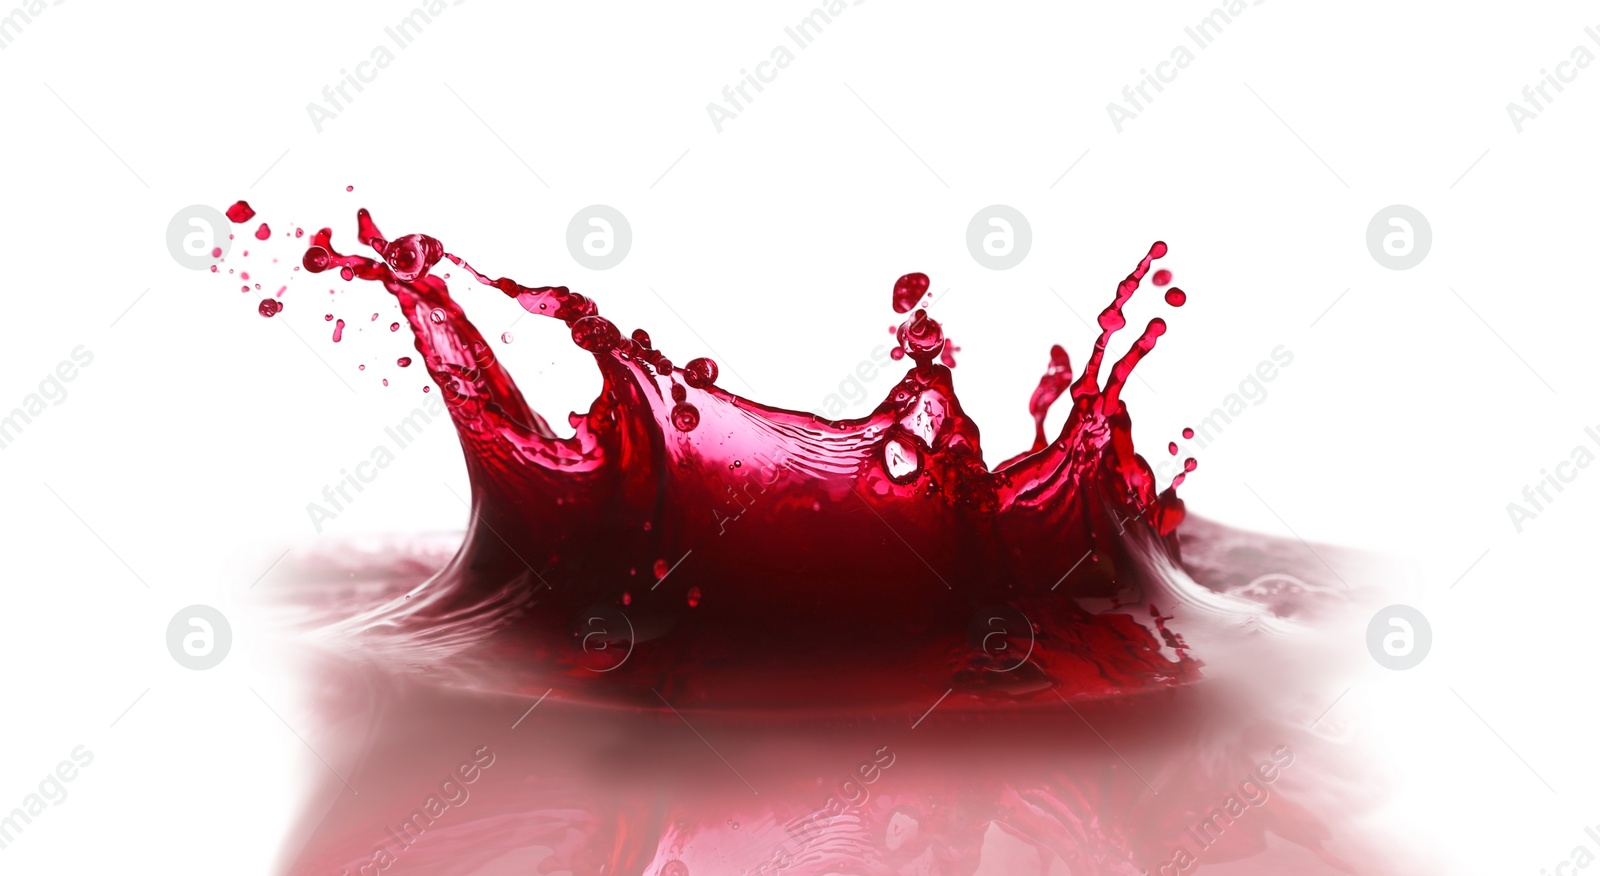 Photo of Splashing tasty fresh juice on white background